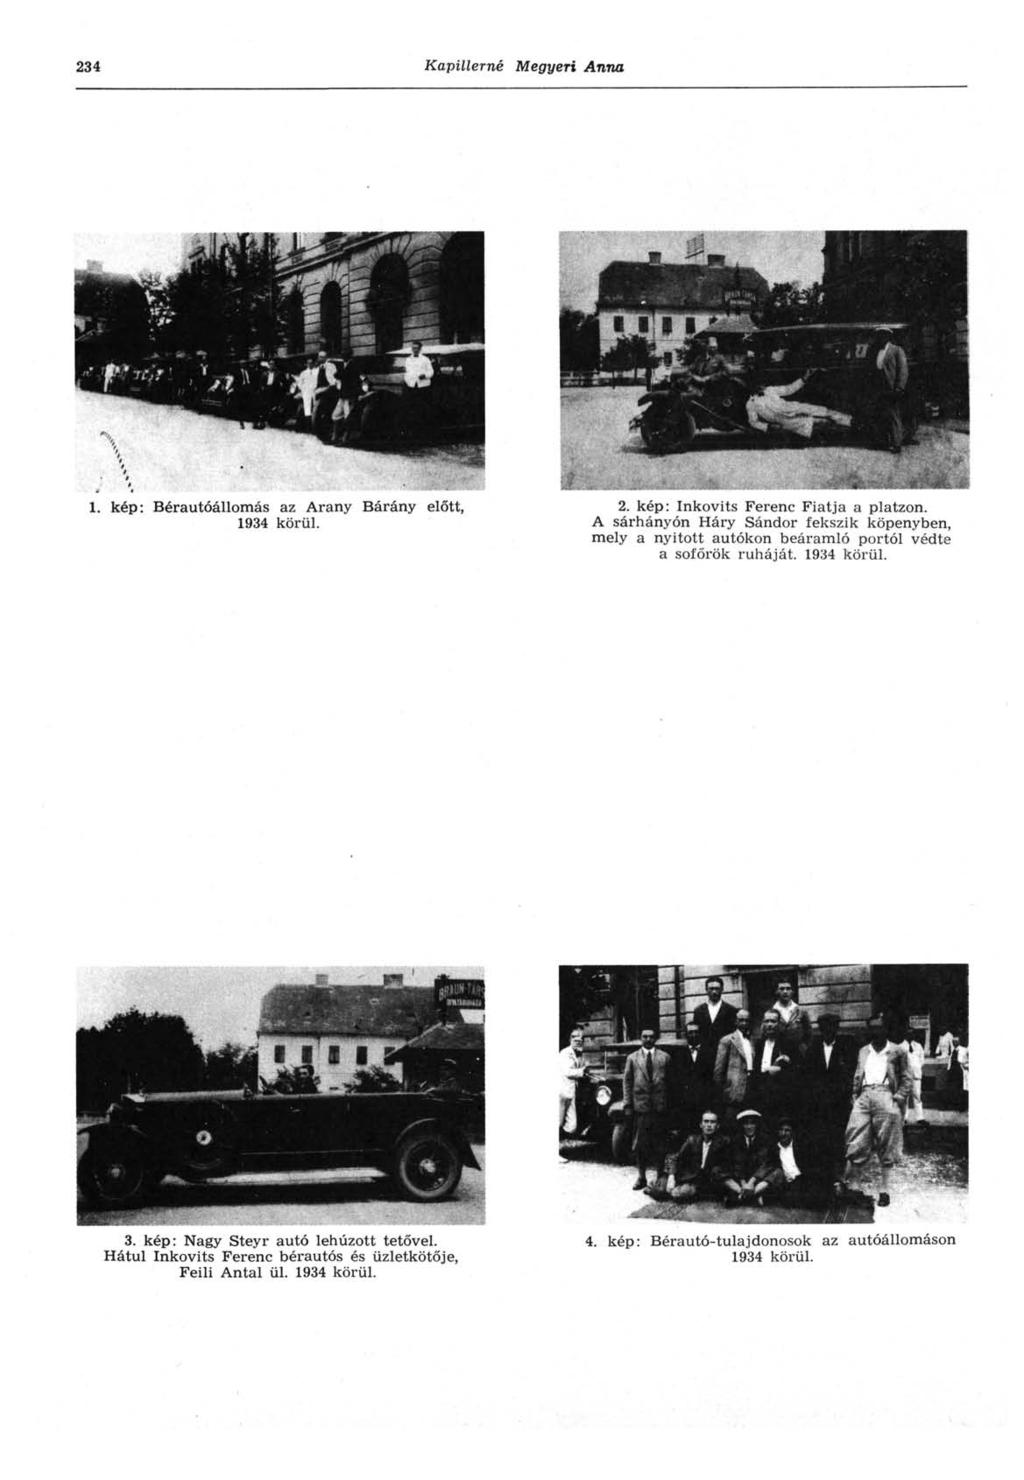 234 Kapillerné Megyeri Anna 1. kép: Bérautóállomás az Arany Bárány előtt, 1934 körül. 2. kép: Inkovits Ferenc Fiatja a platzon.